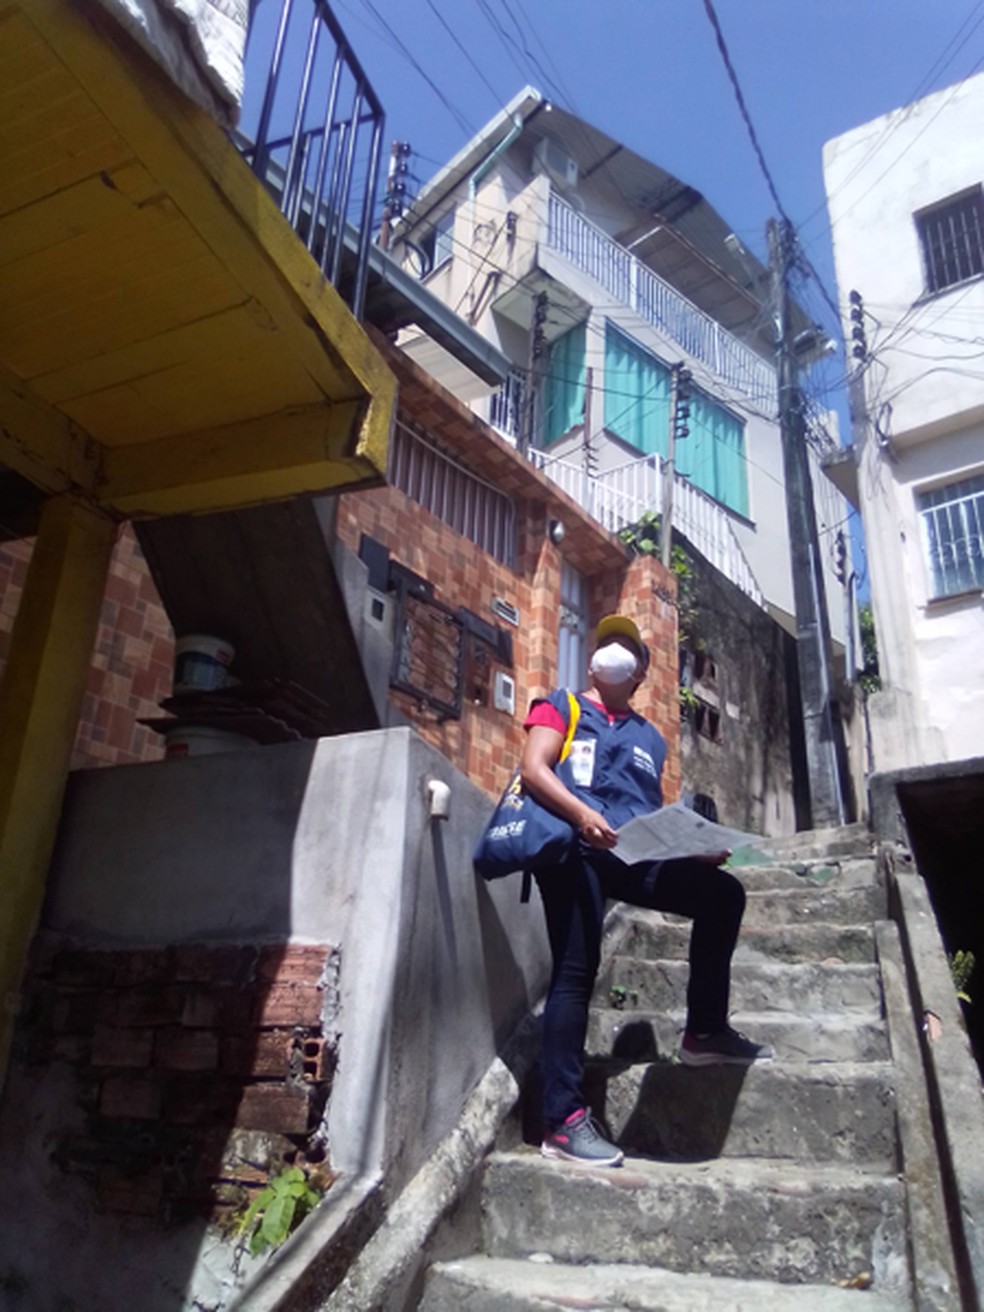 Recenseadores do IBGE registraram os tipos de moradia que encontraram pelo Brasil — Foto: Divulgação/IBGE